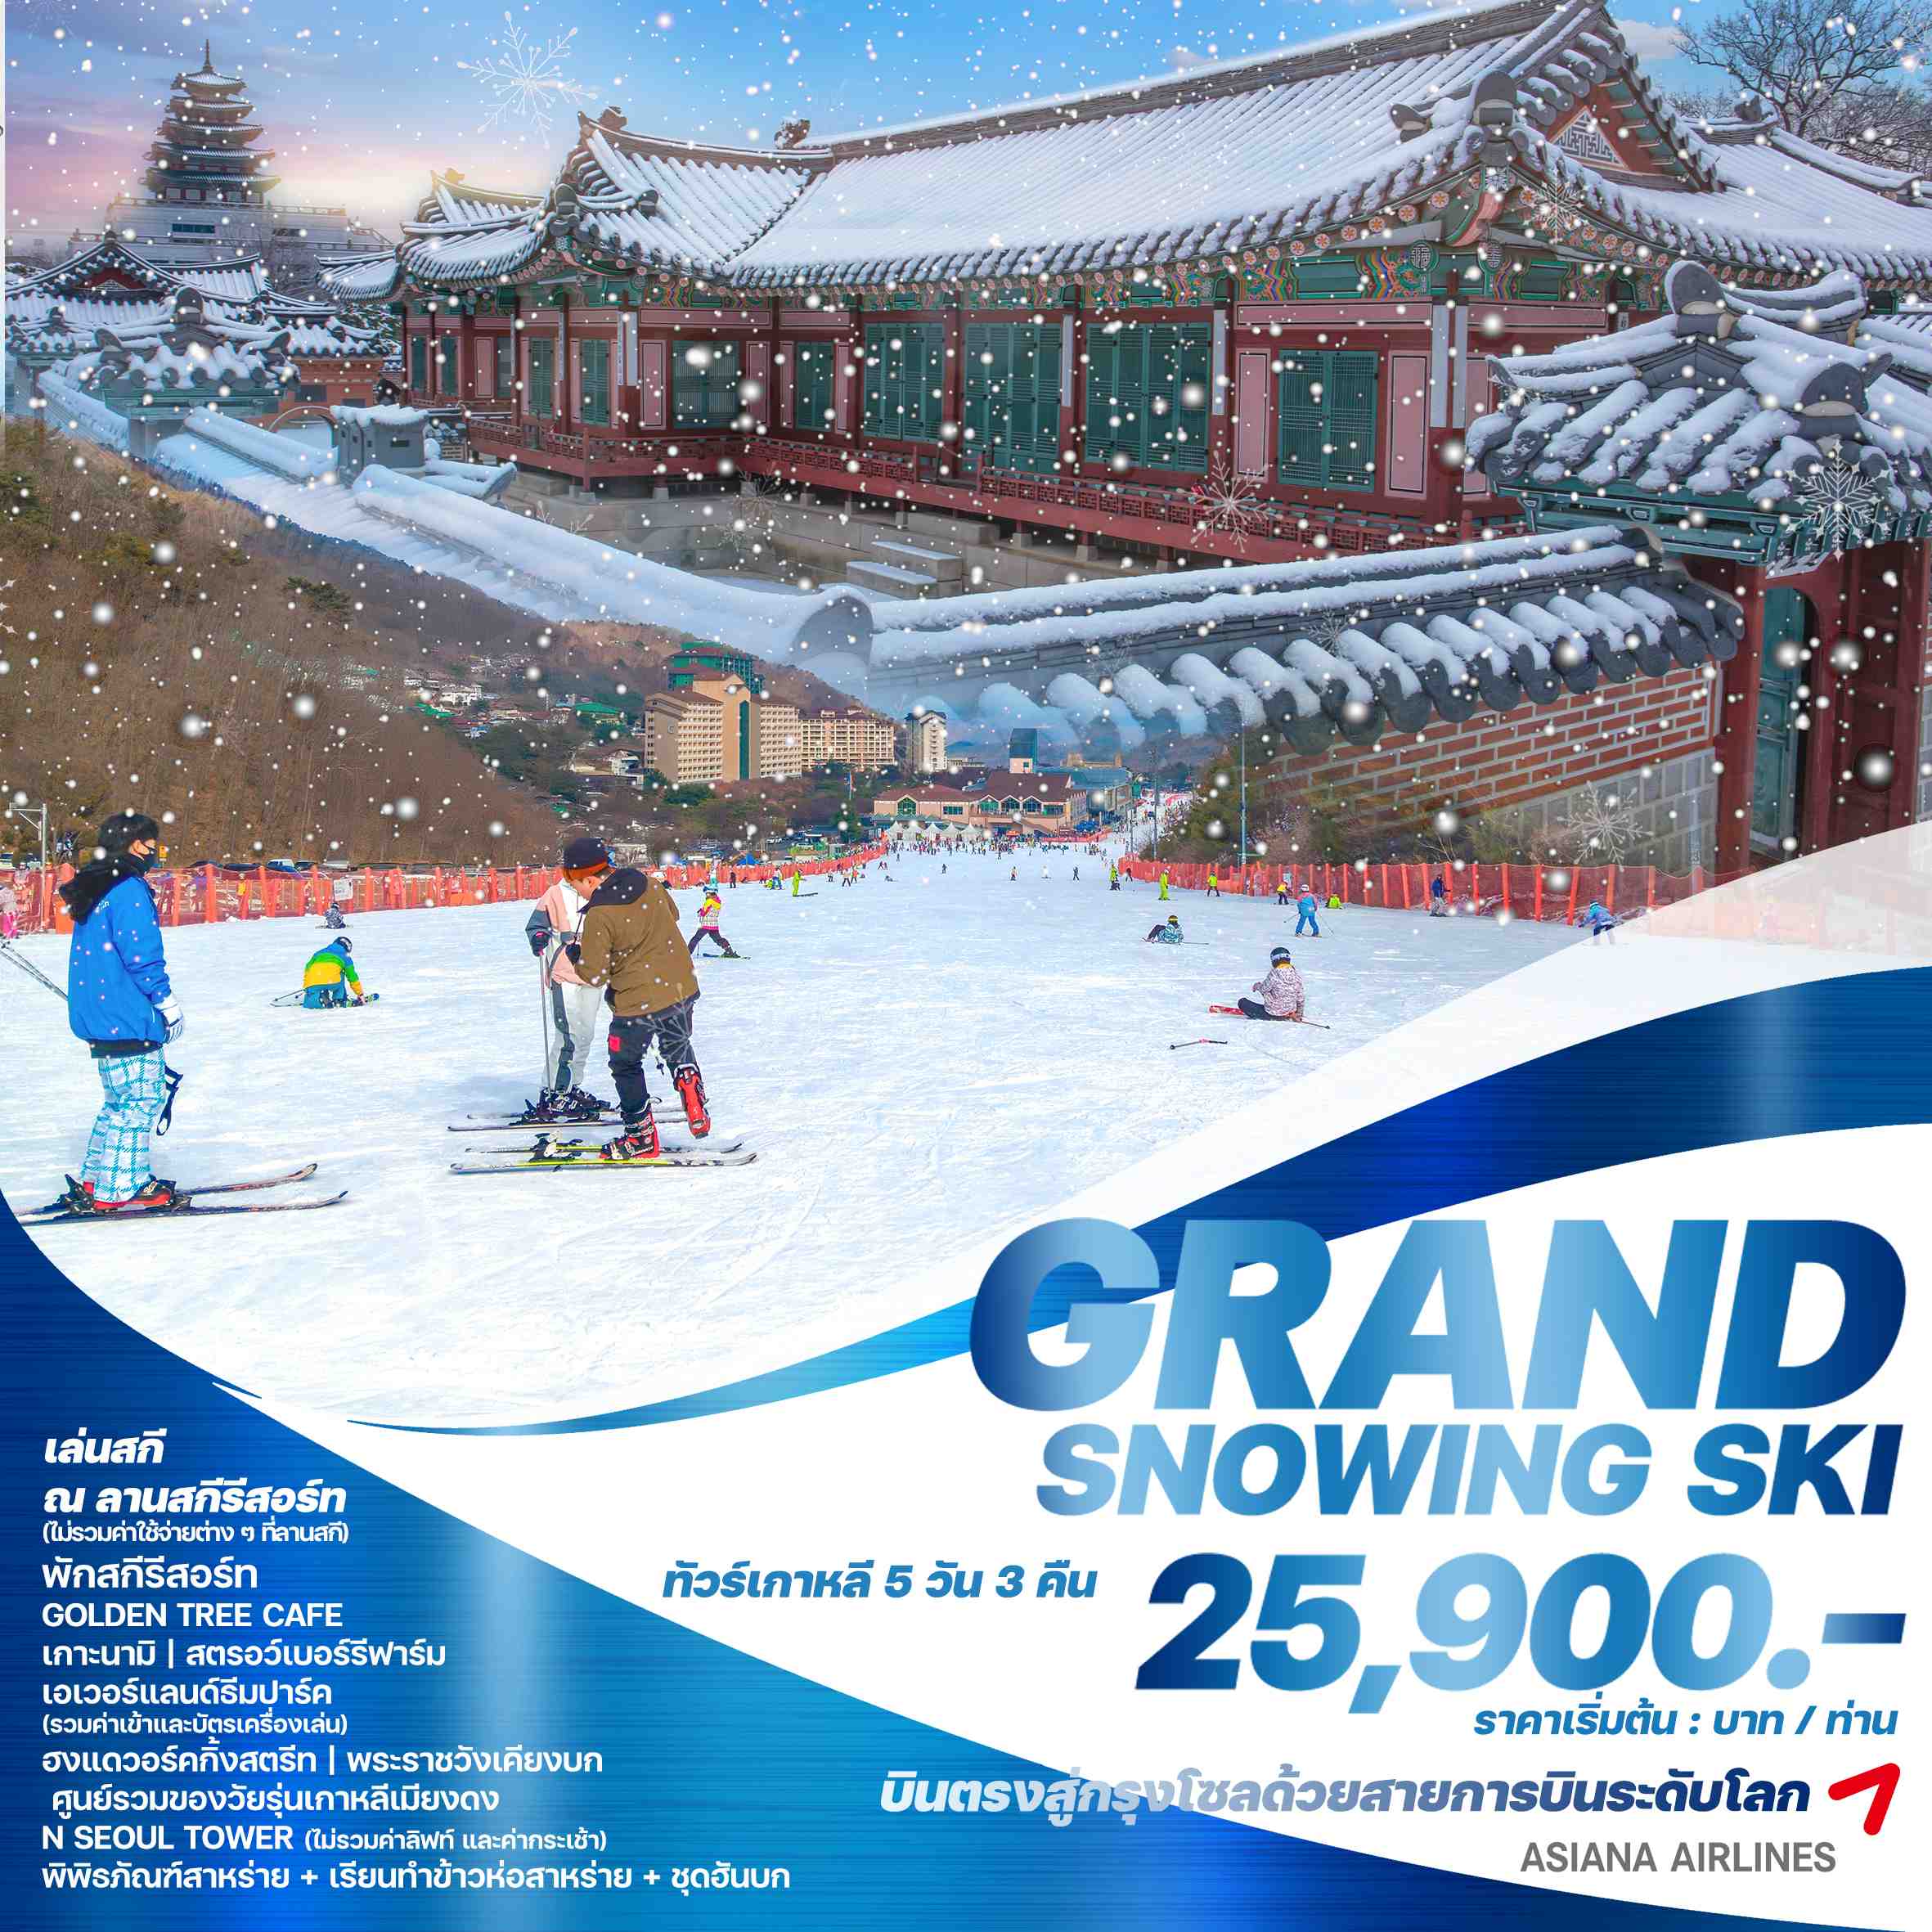 ทัวร์เกาหลี GRAND SNOWING SKI 5วัน 3คืน (OZ)